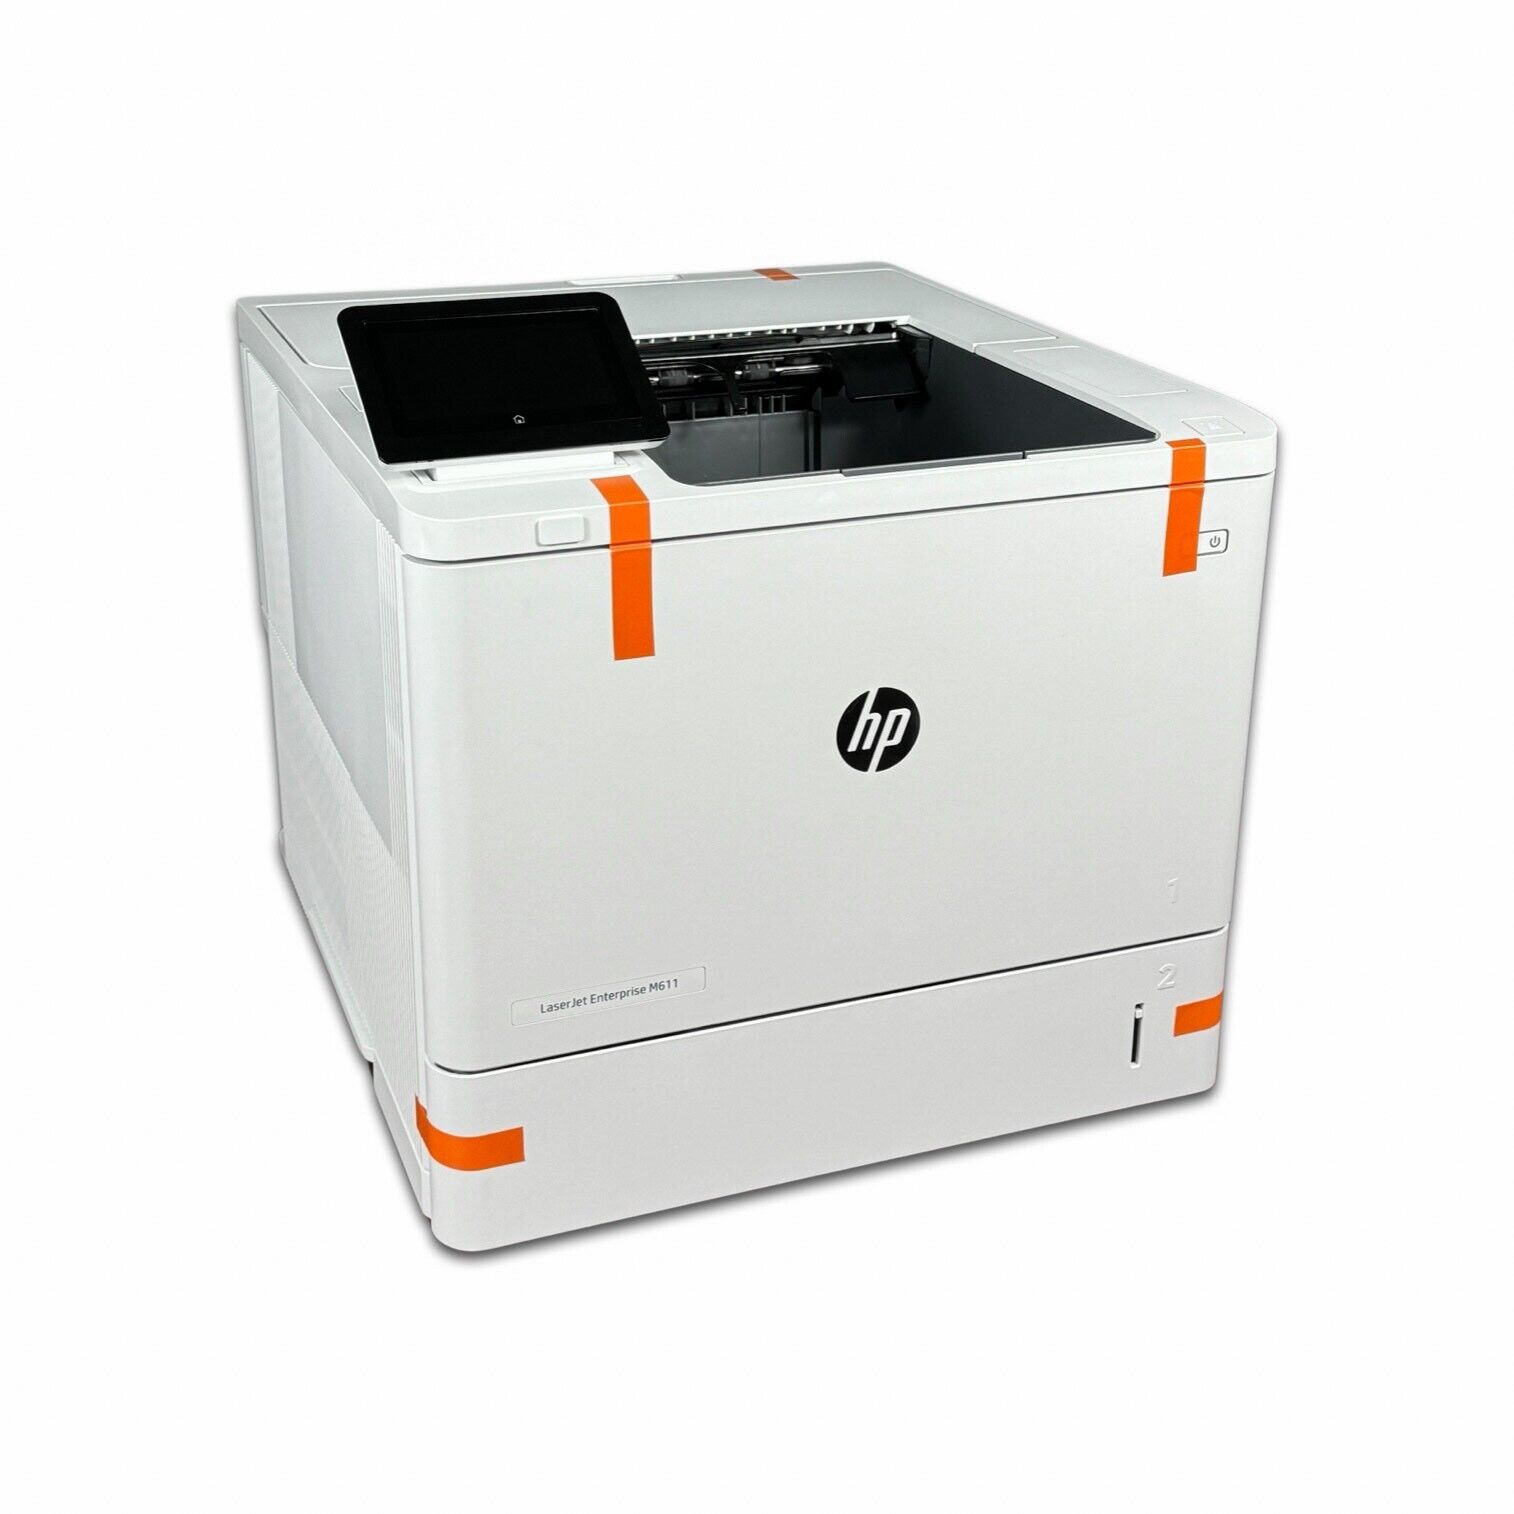 HP LaserJet Enterprise M611dn Monochrome Laser Printer 7PS84A